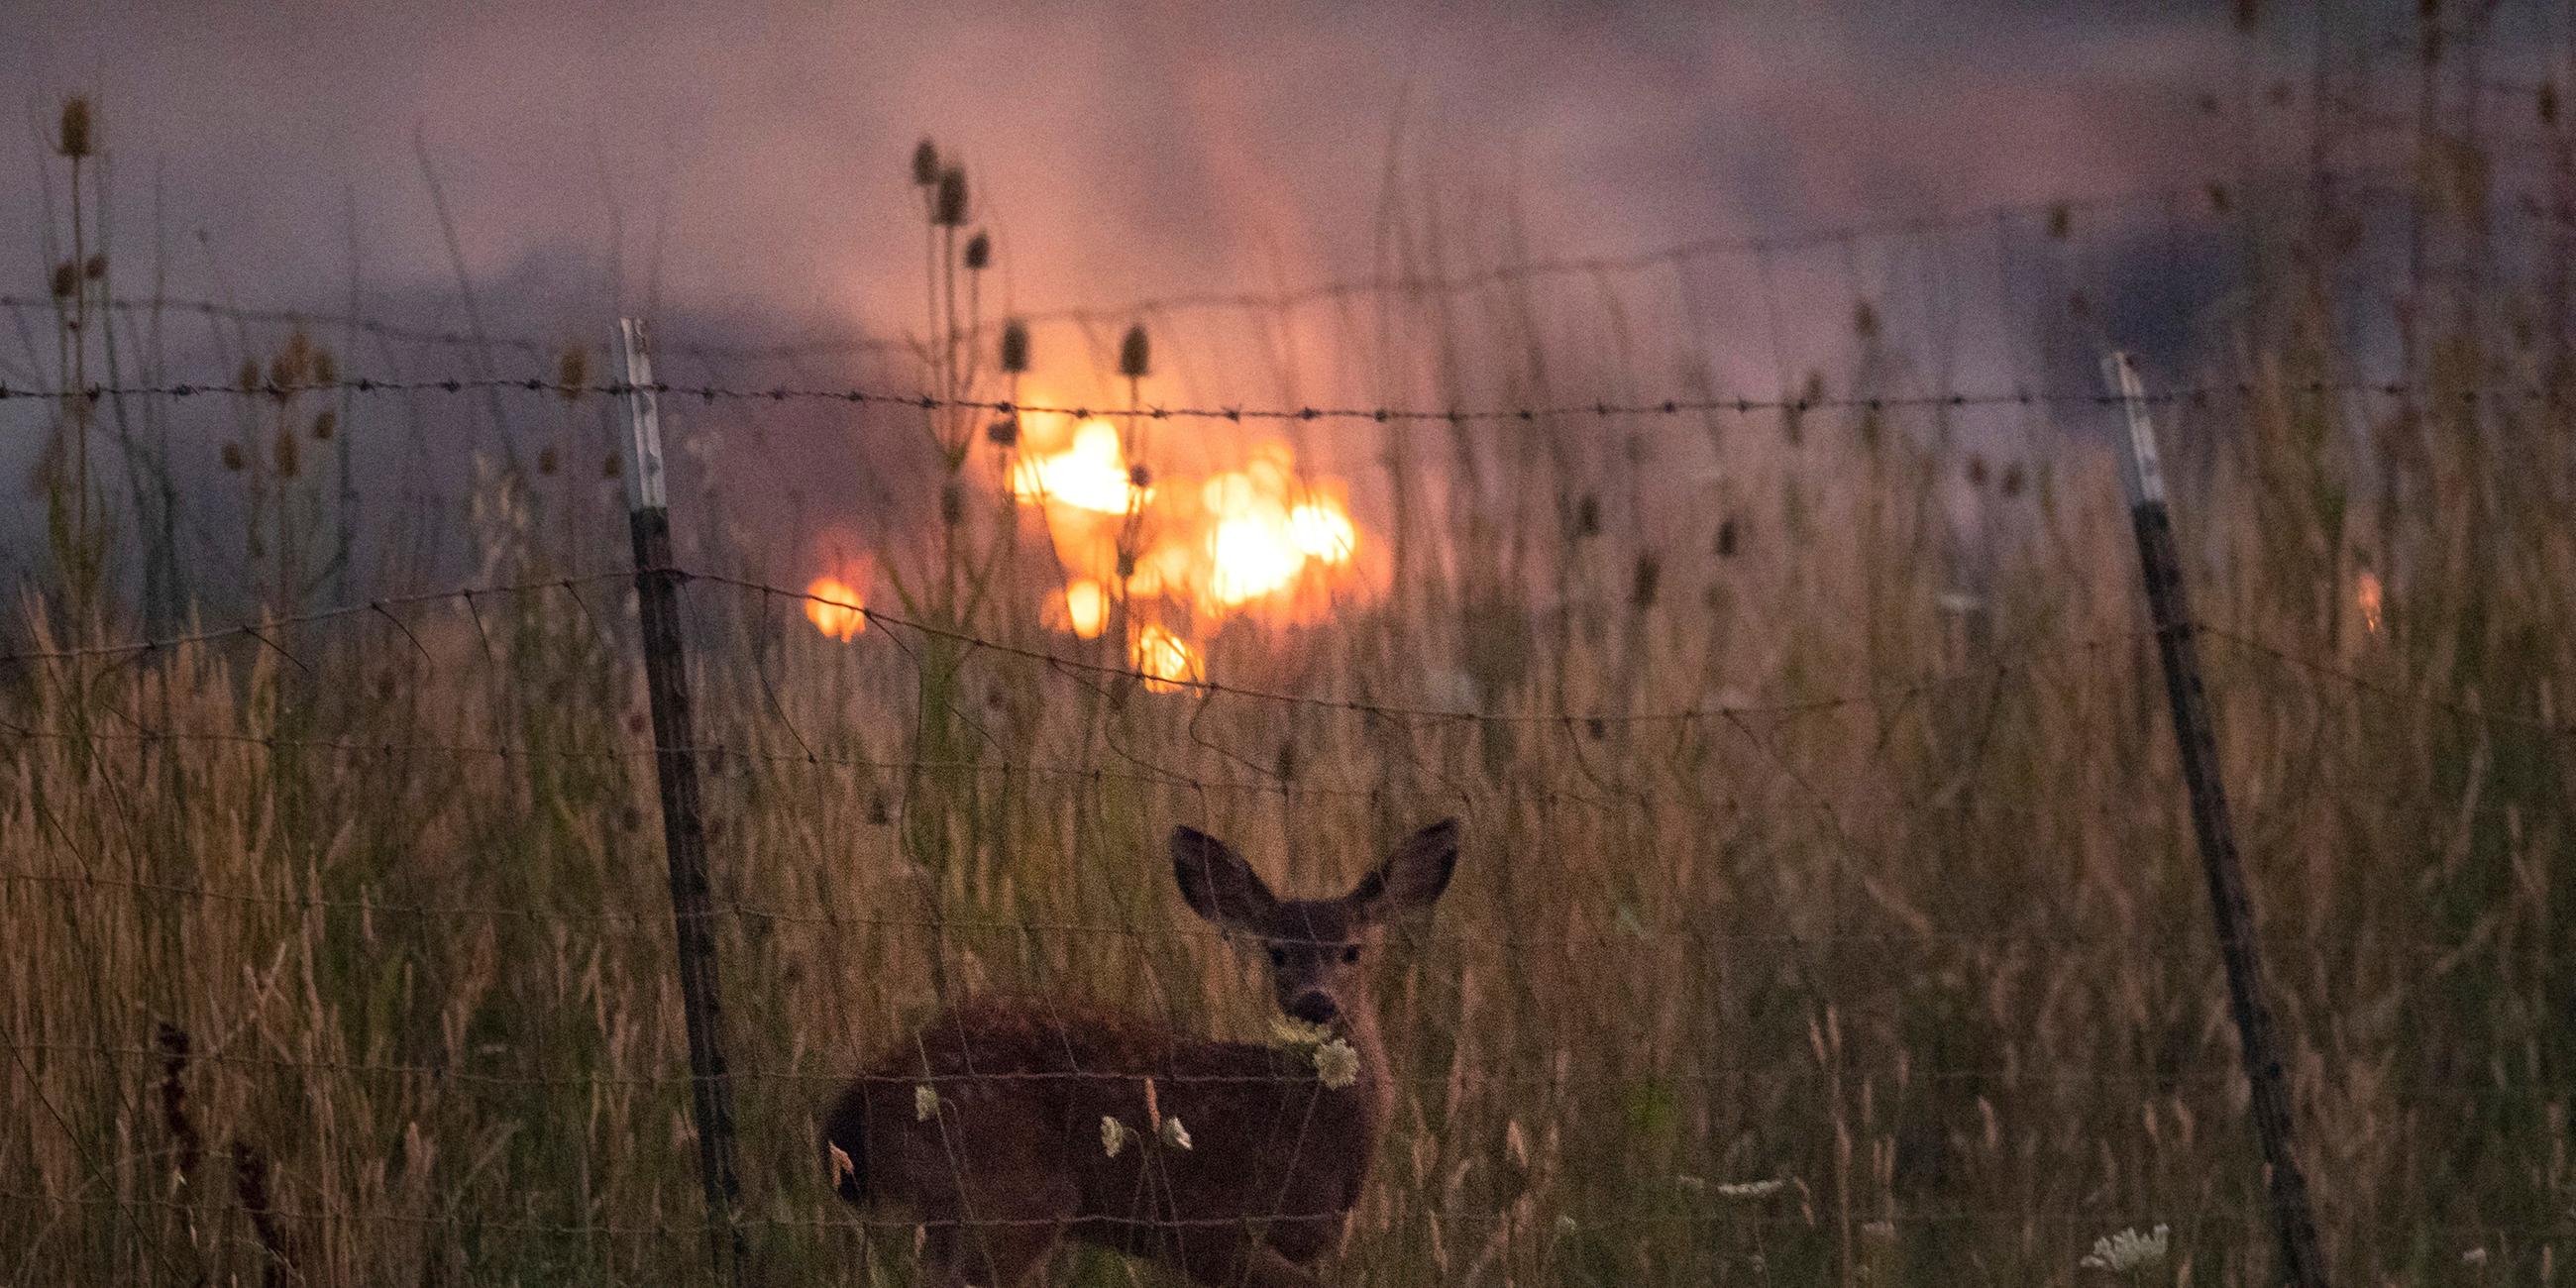 Rotwild am 31.7.2018 an einem Zaun, hinter dem die Brände in Kalifornien zu sehen sind